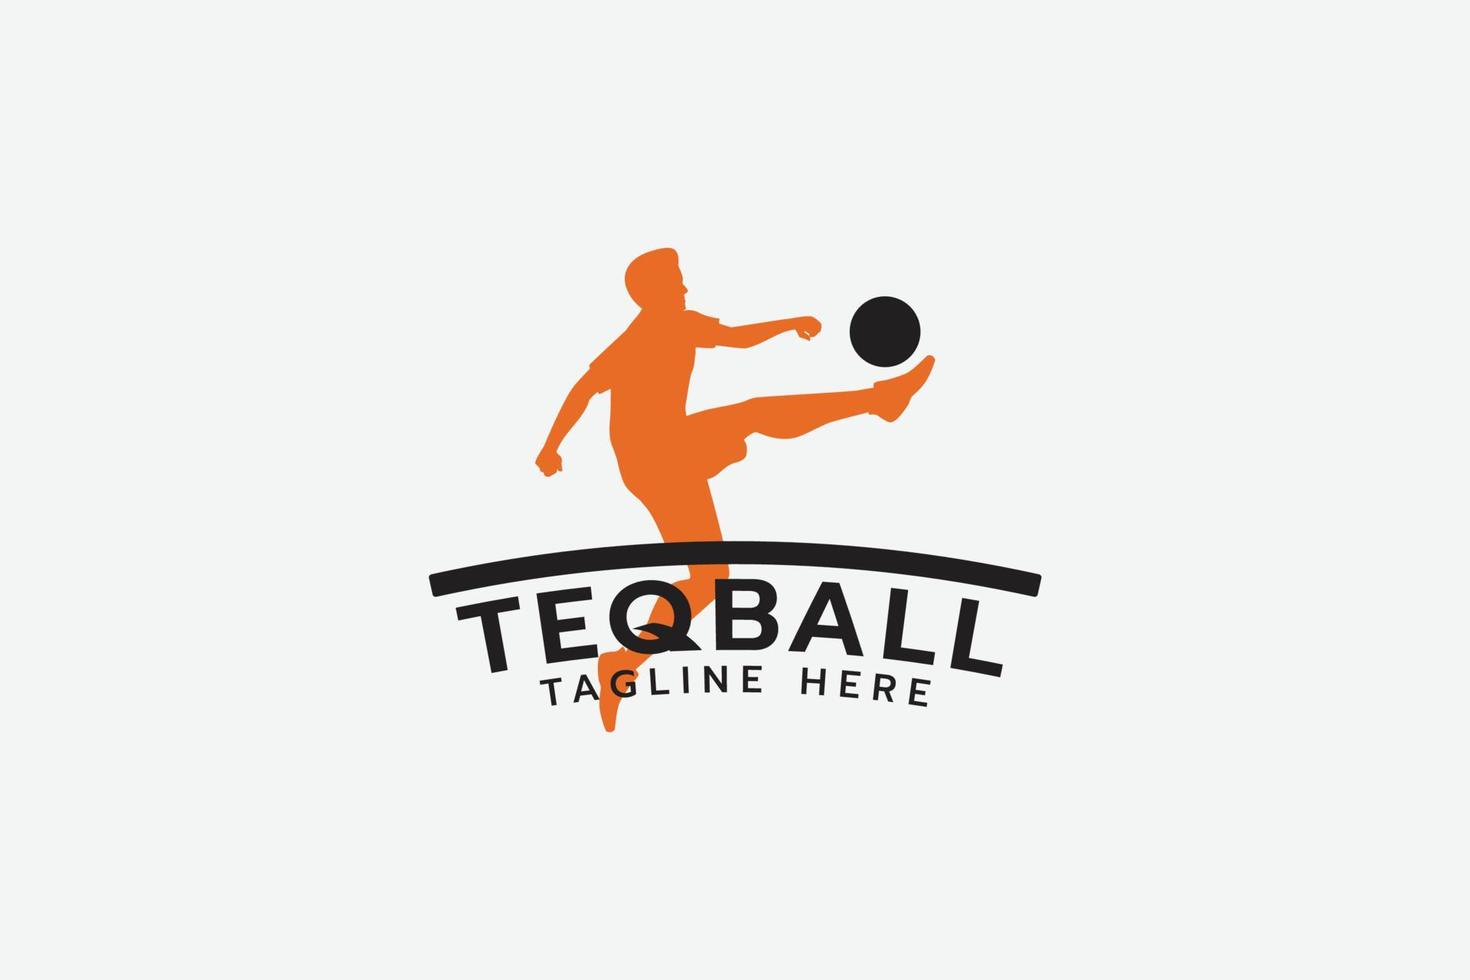 logotipo teqball com silhueta de um homem jogando teqball. vetor